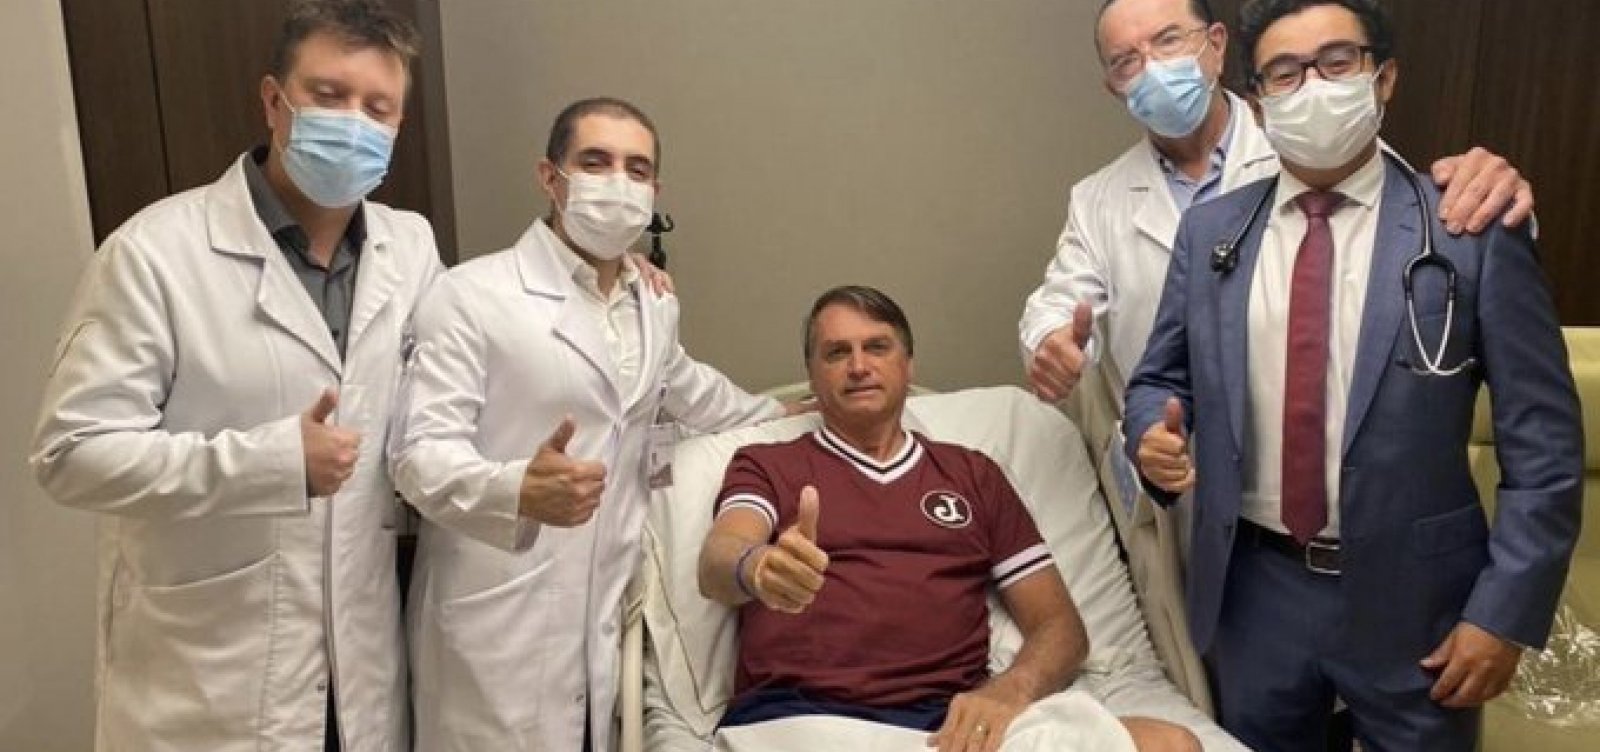 Bolsonaro posta foto com equipe médica e anuncia alta hospitalar